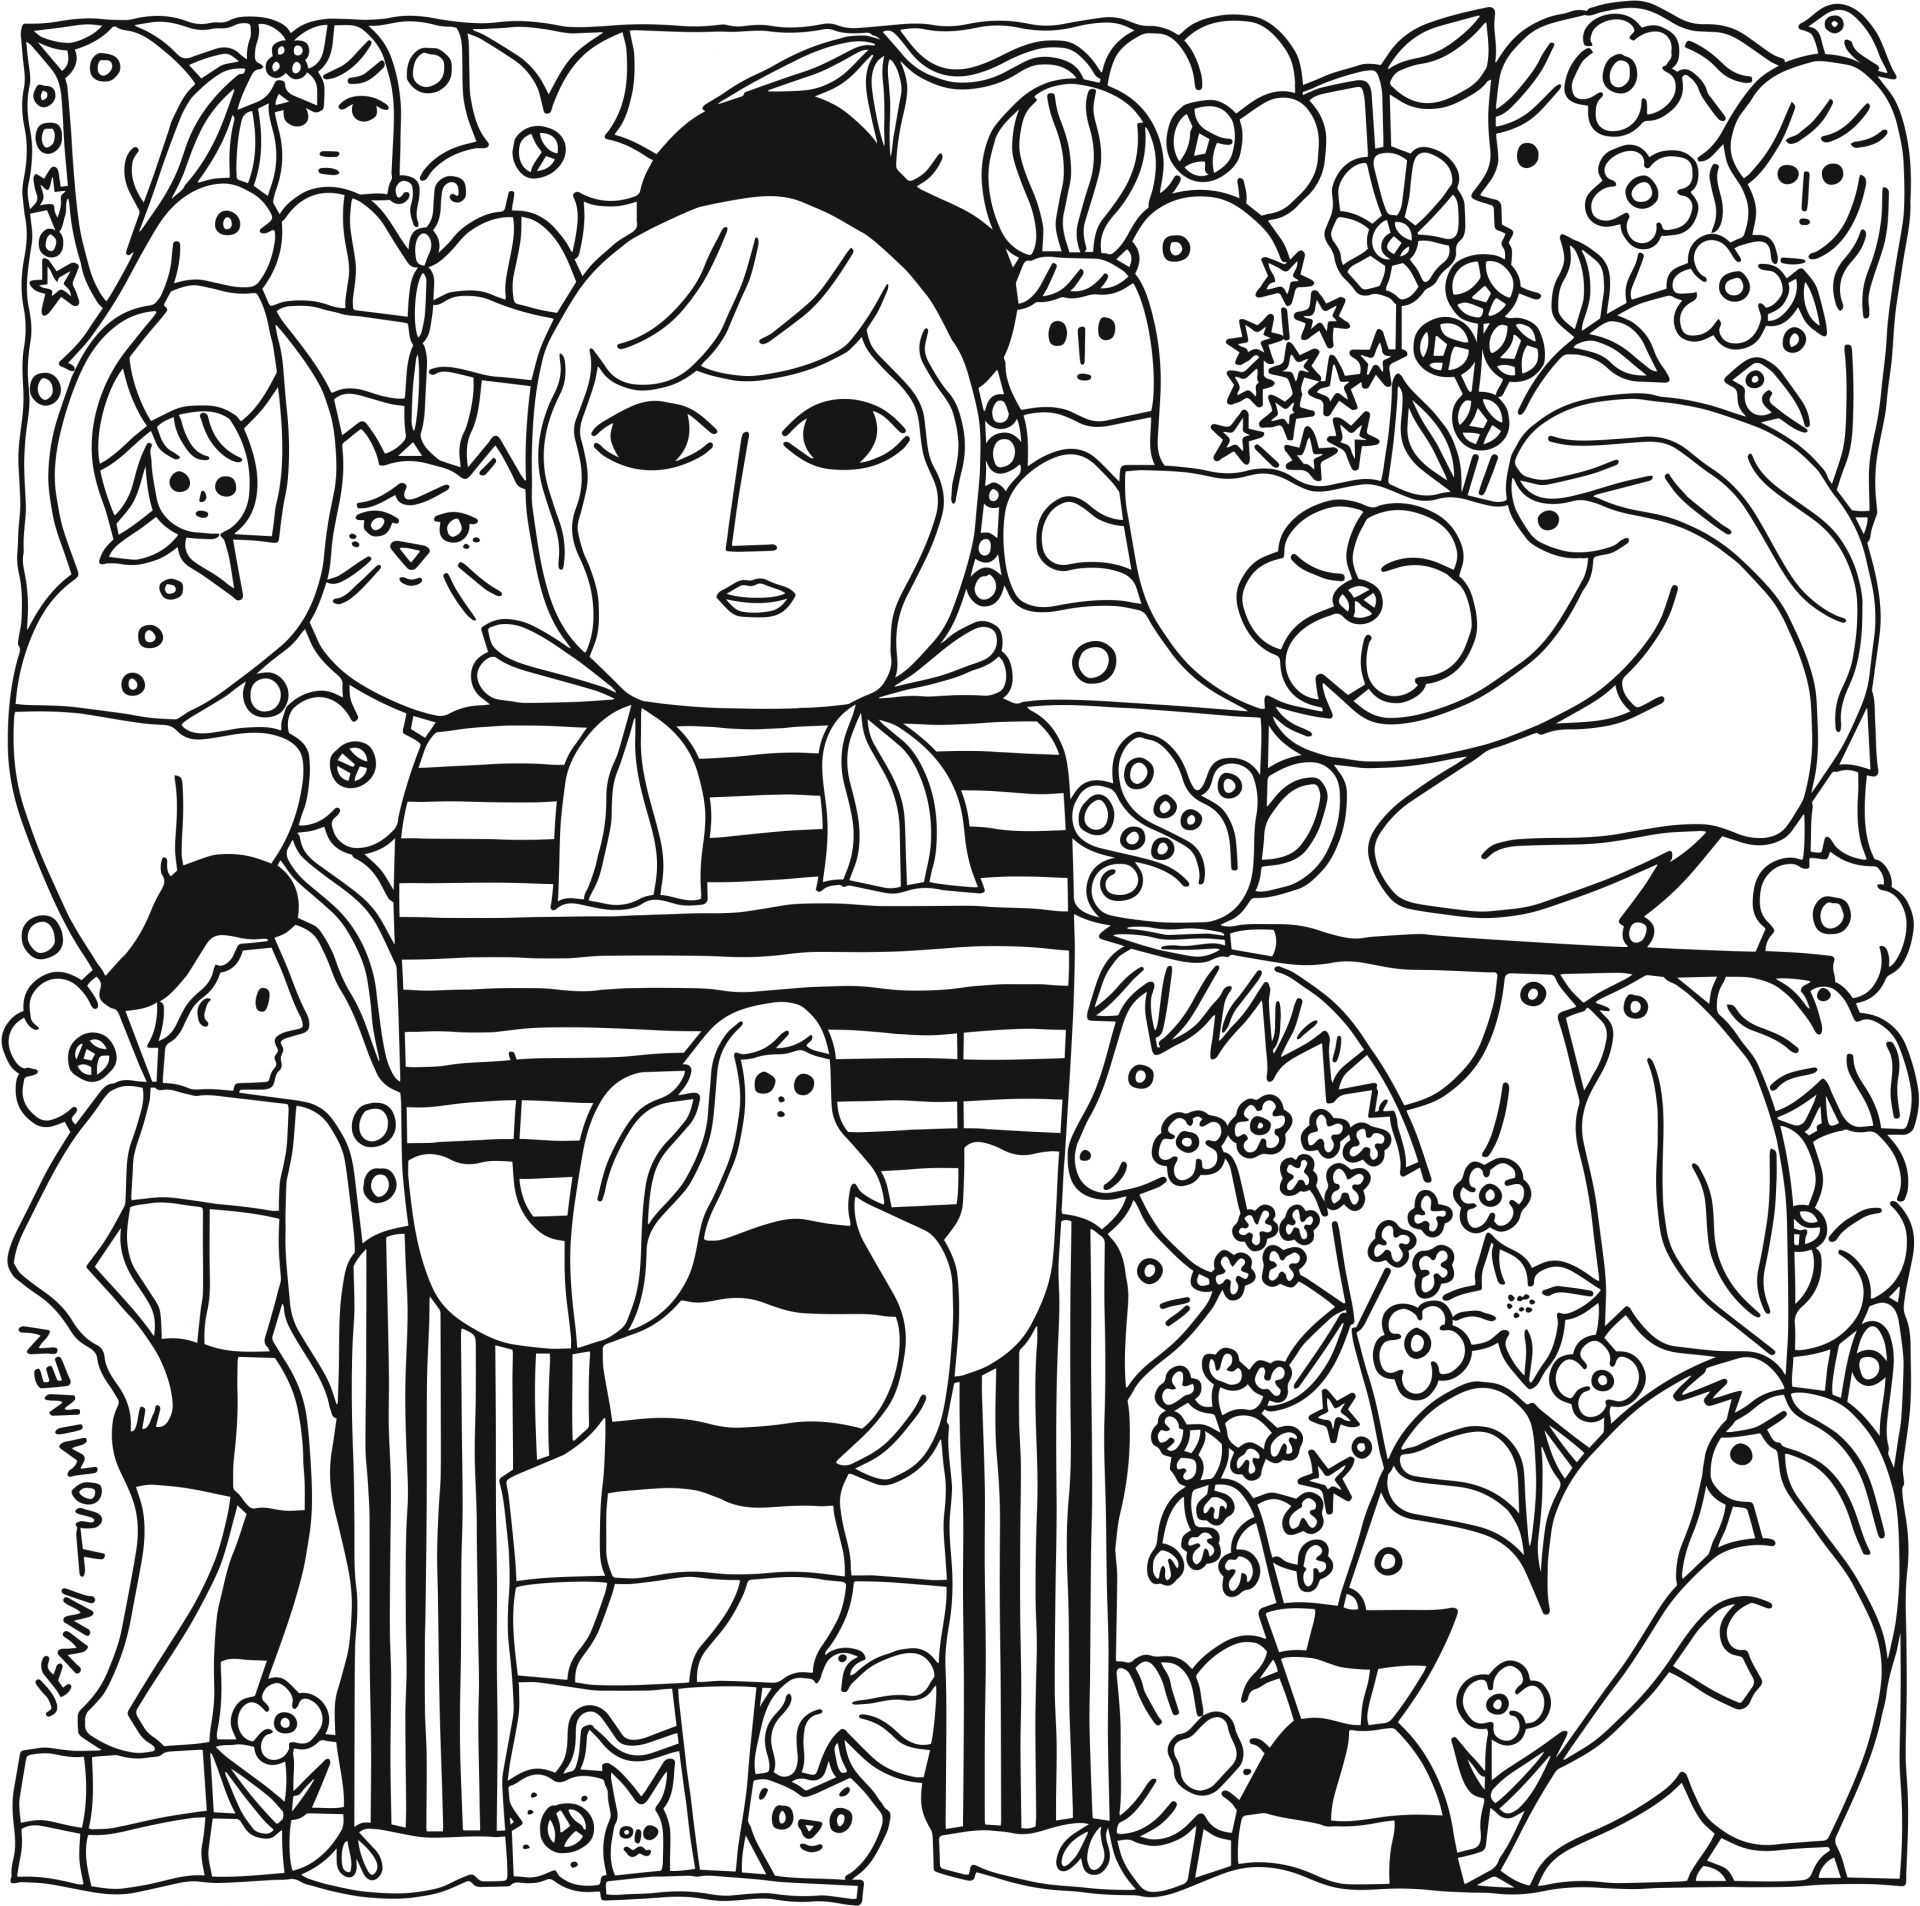 Svartvit illustration med människo- och djurfigurer. I mitten en person med randig skjorta och basker som drejar. Illustration av Jenni Tuominen, Konstrundan 2022